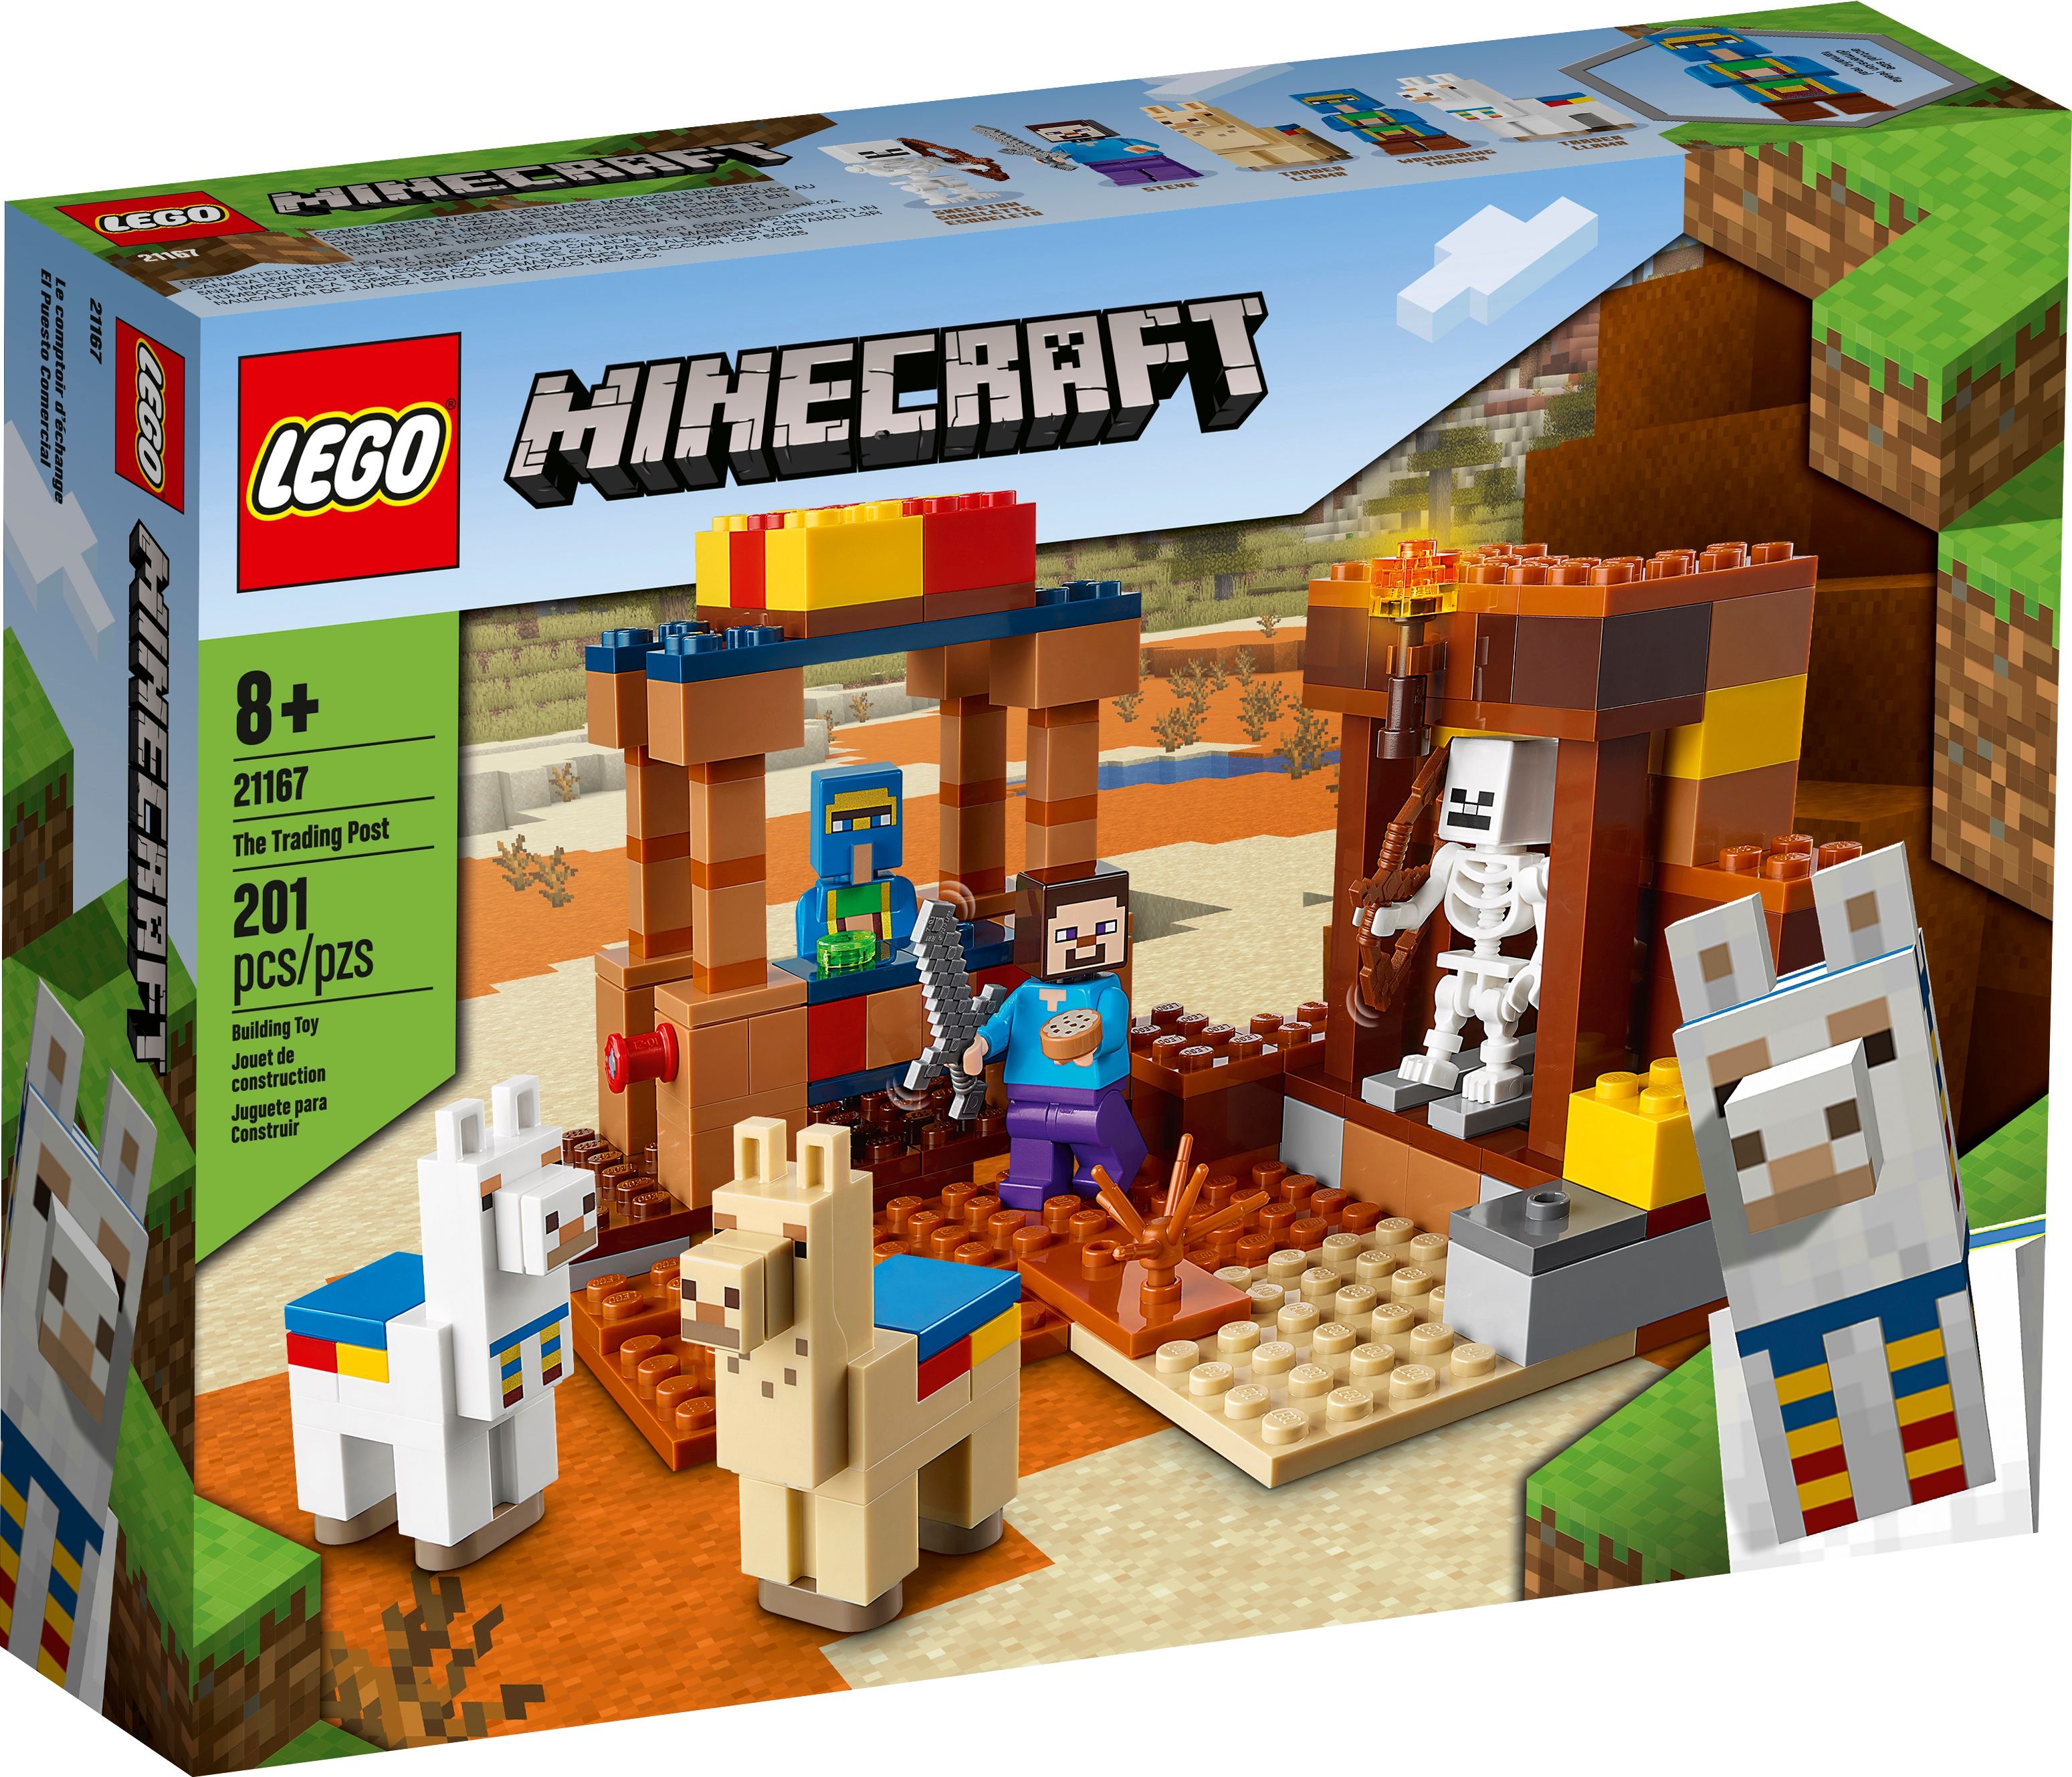 LEGO Minecraft 21167 Der Handelsplatz LEGO_21167_alt1.jpg